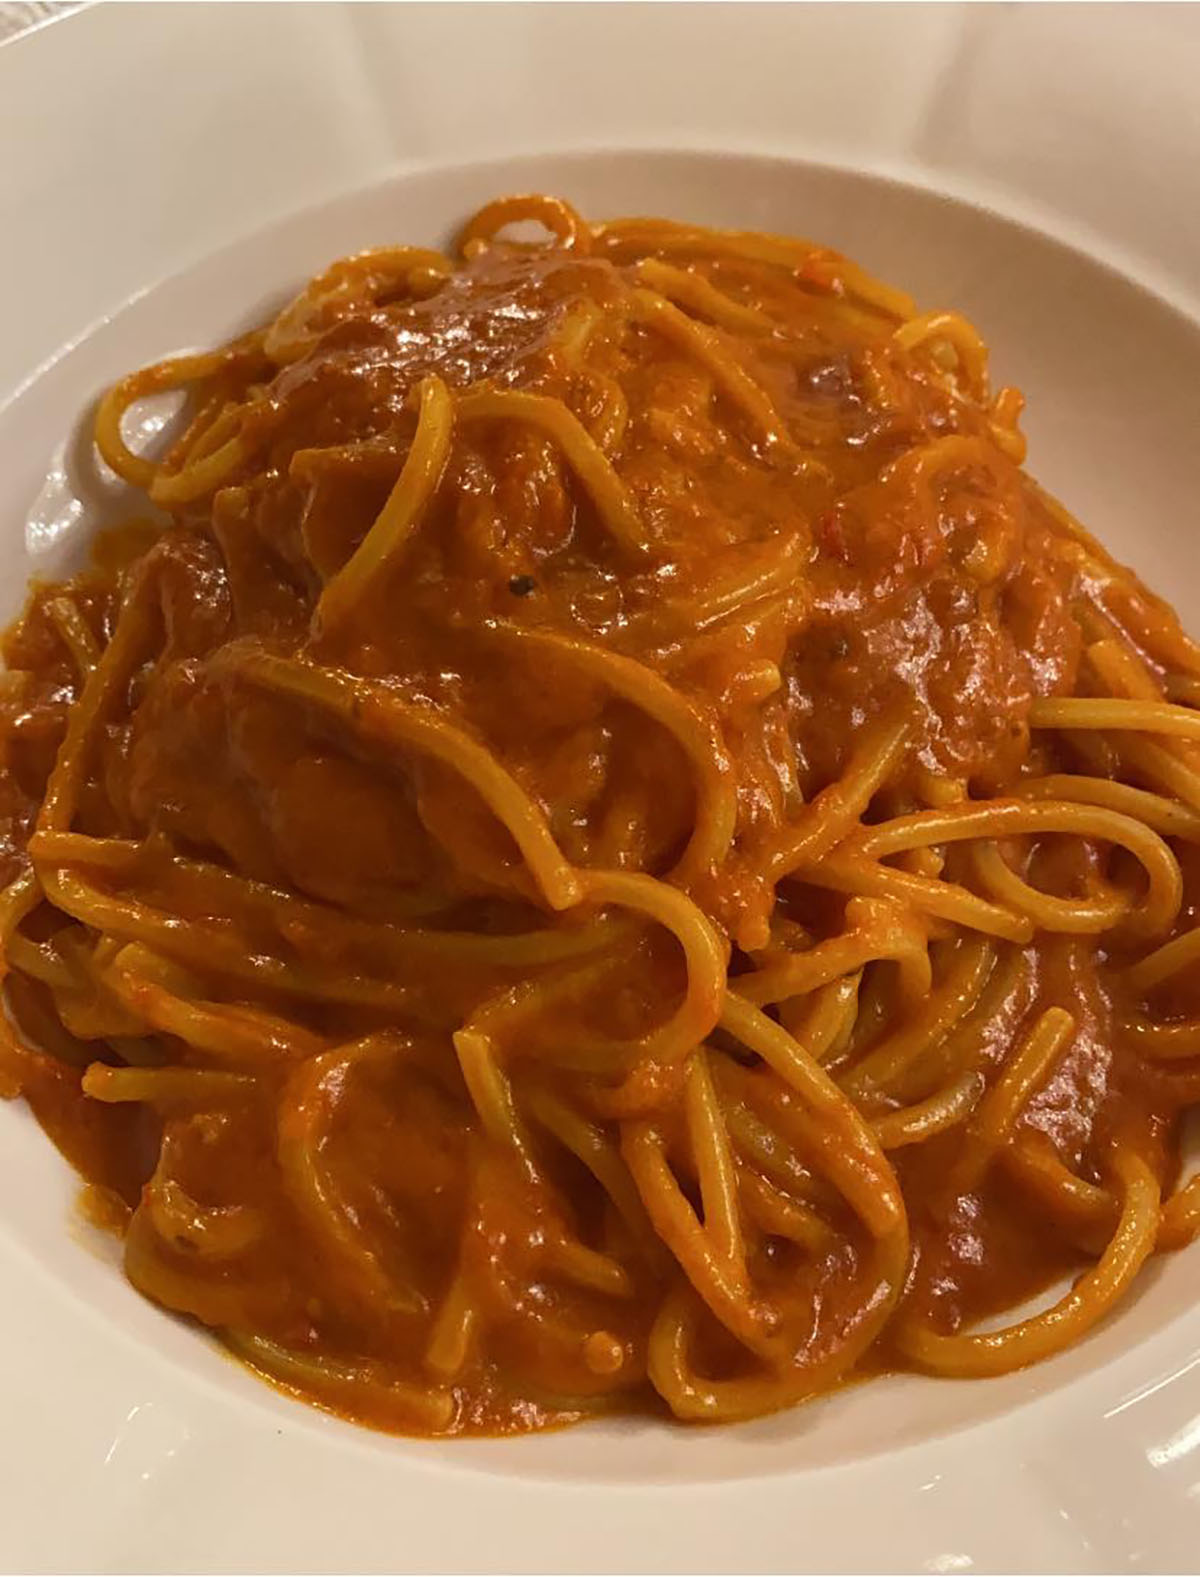 spaghetti-alla-corte-di-assise,-la-ricetta-tradizionale-calabrese-con-i-due-trucchi-dell’aglio-e-parmigiano.-pronta-in-10-minuti